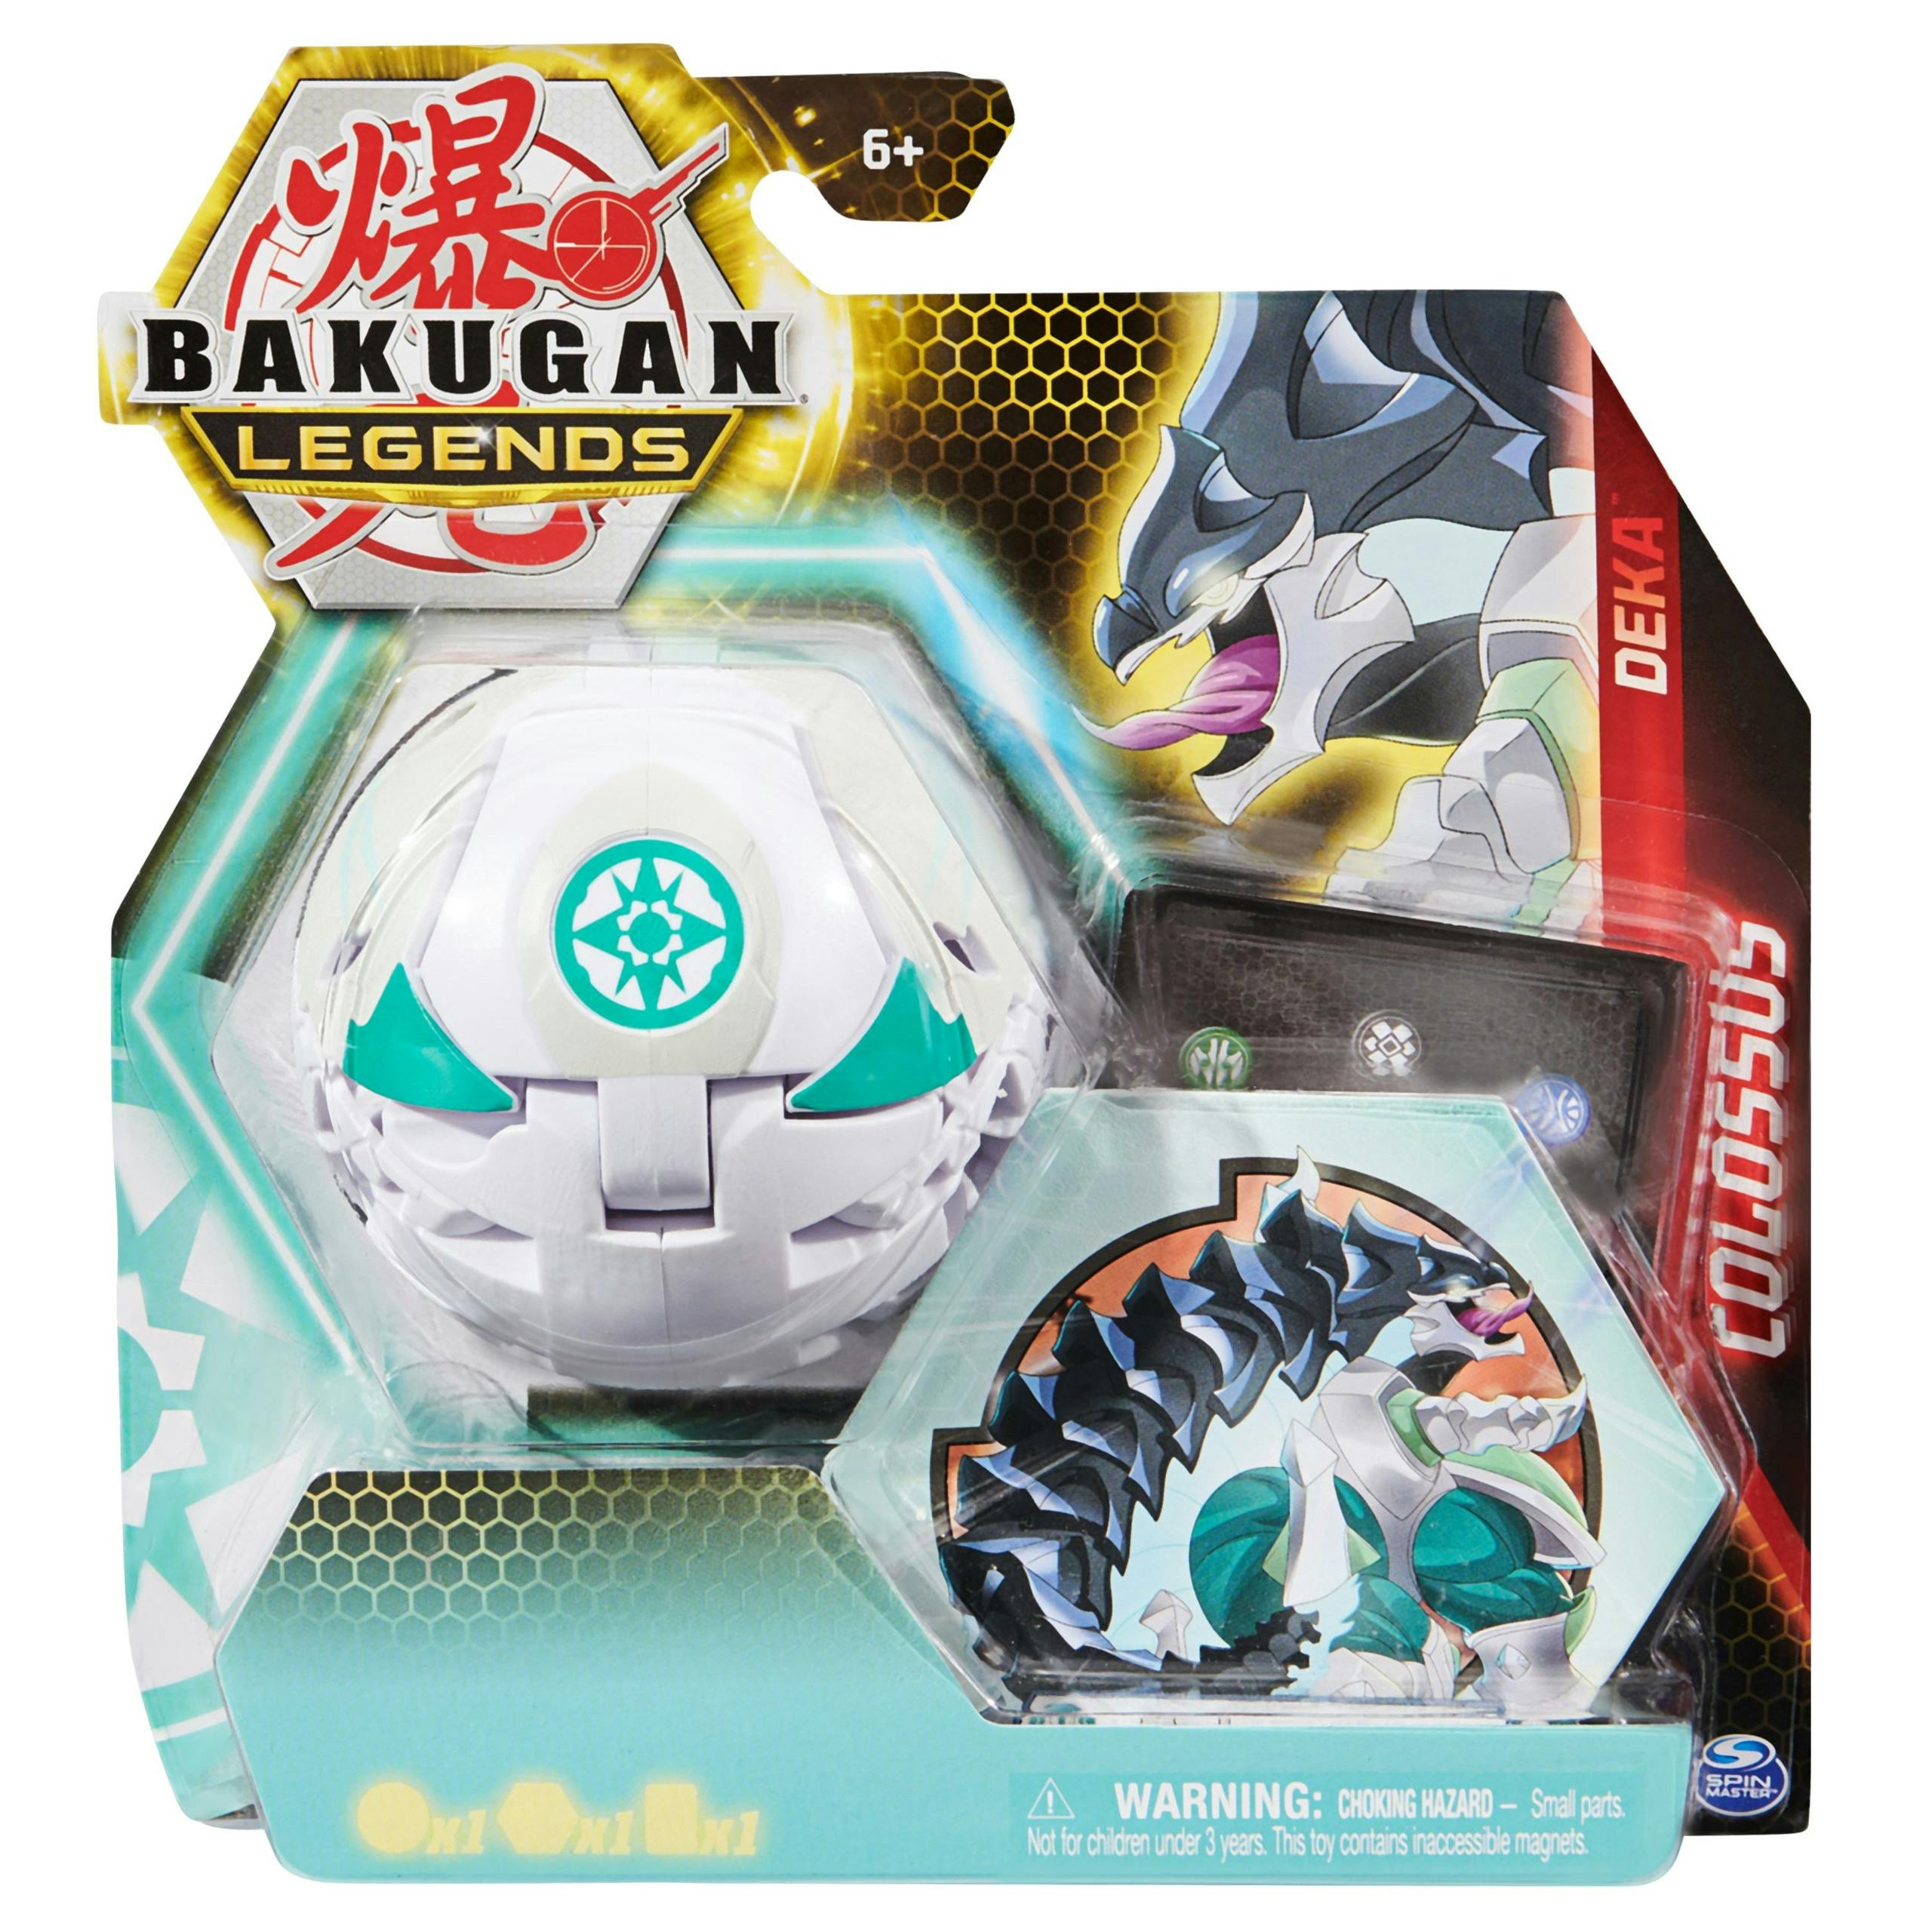 Bakugan Legends S5 - Deka Bakugan